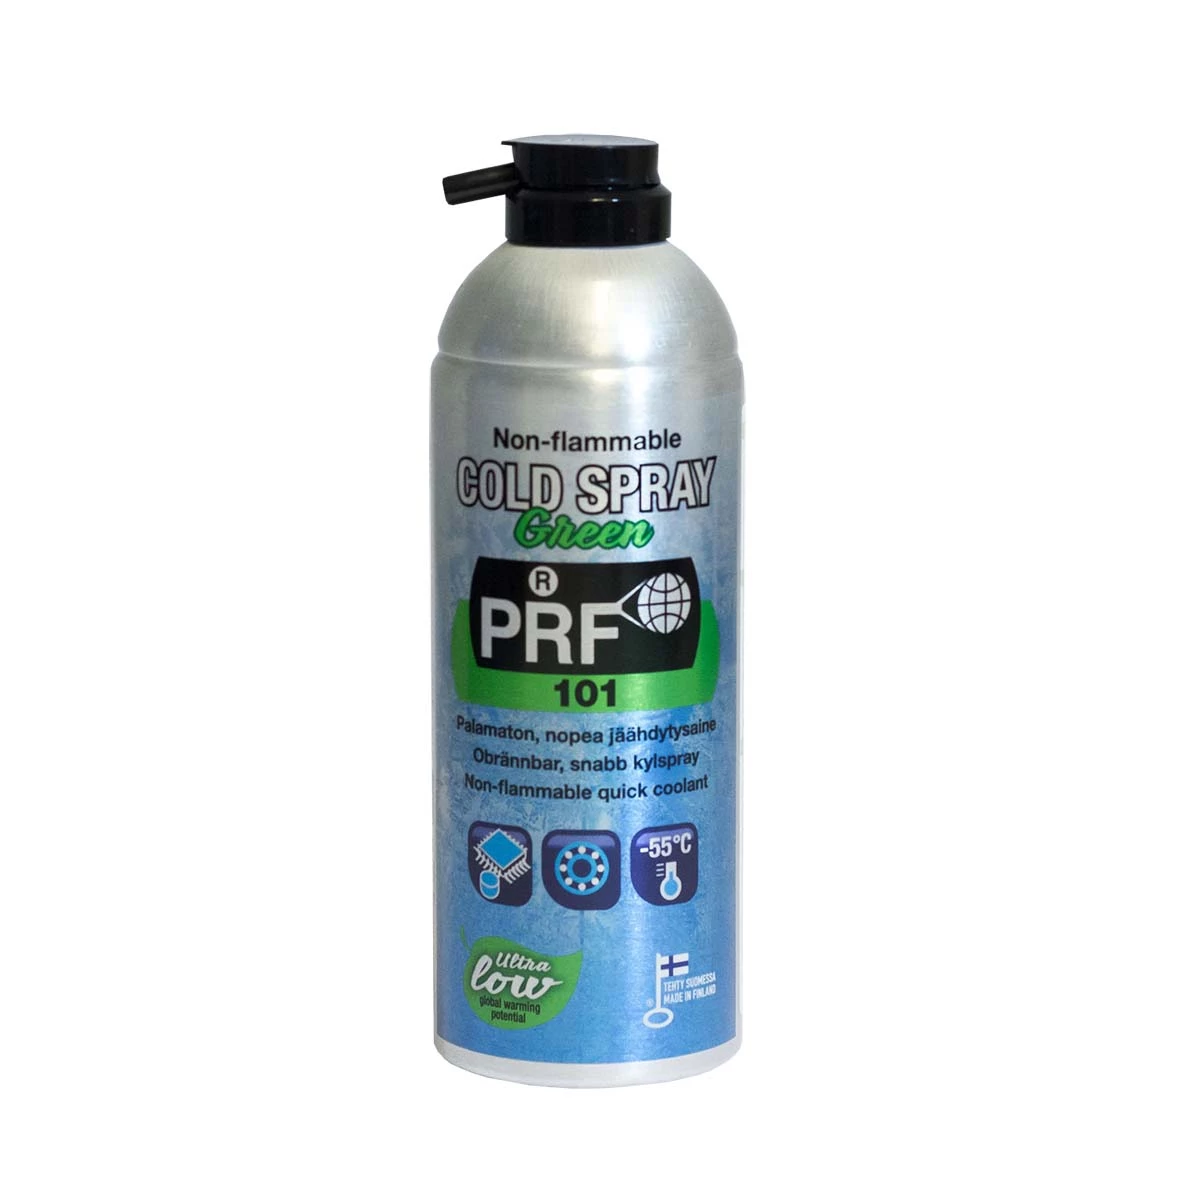 PRF Kältespray grün nicht brennbar 520 ml